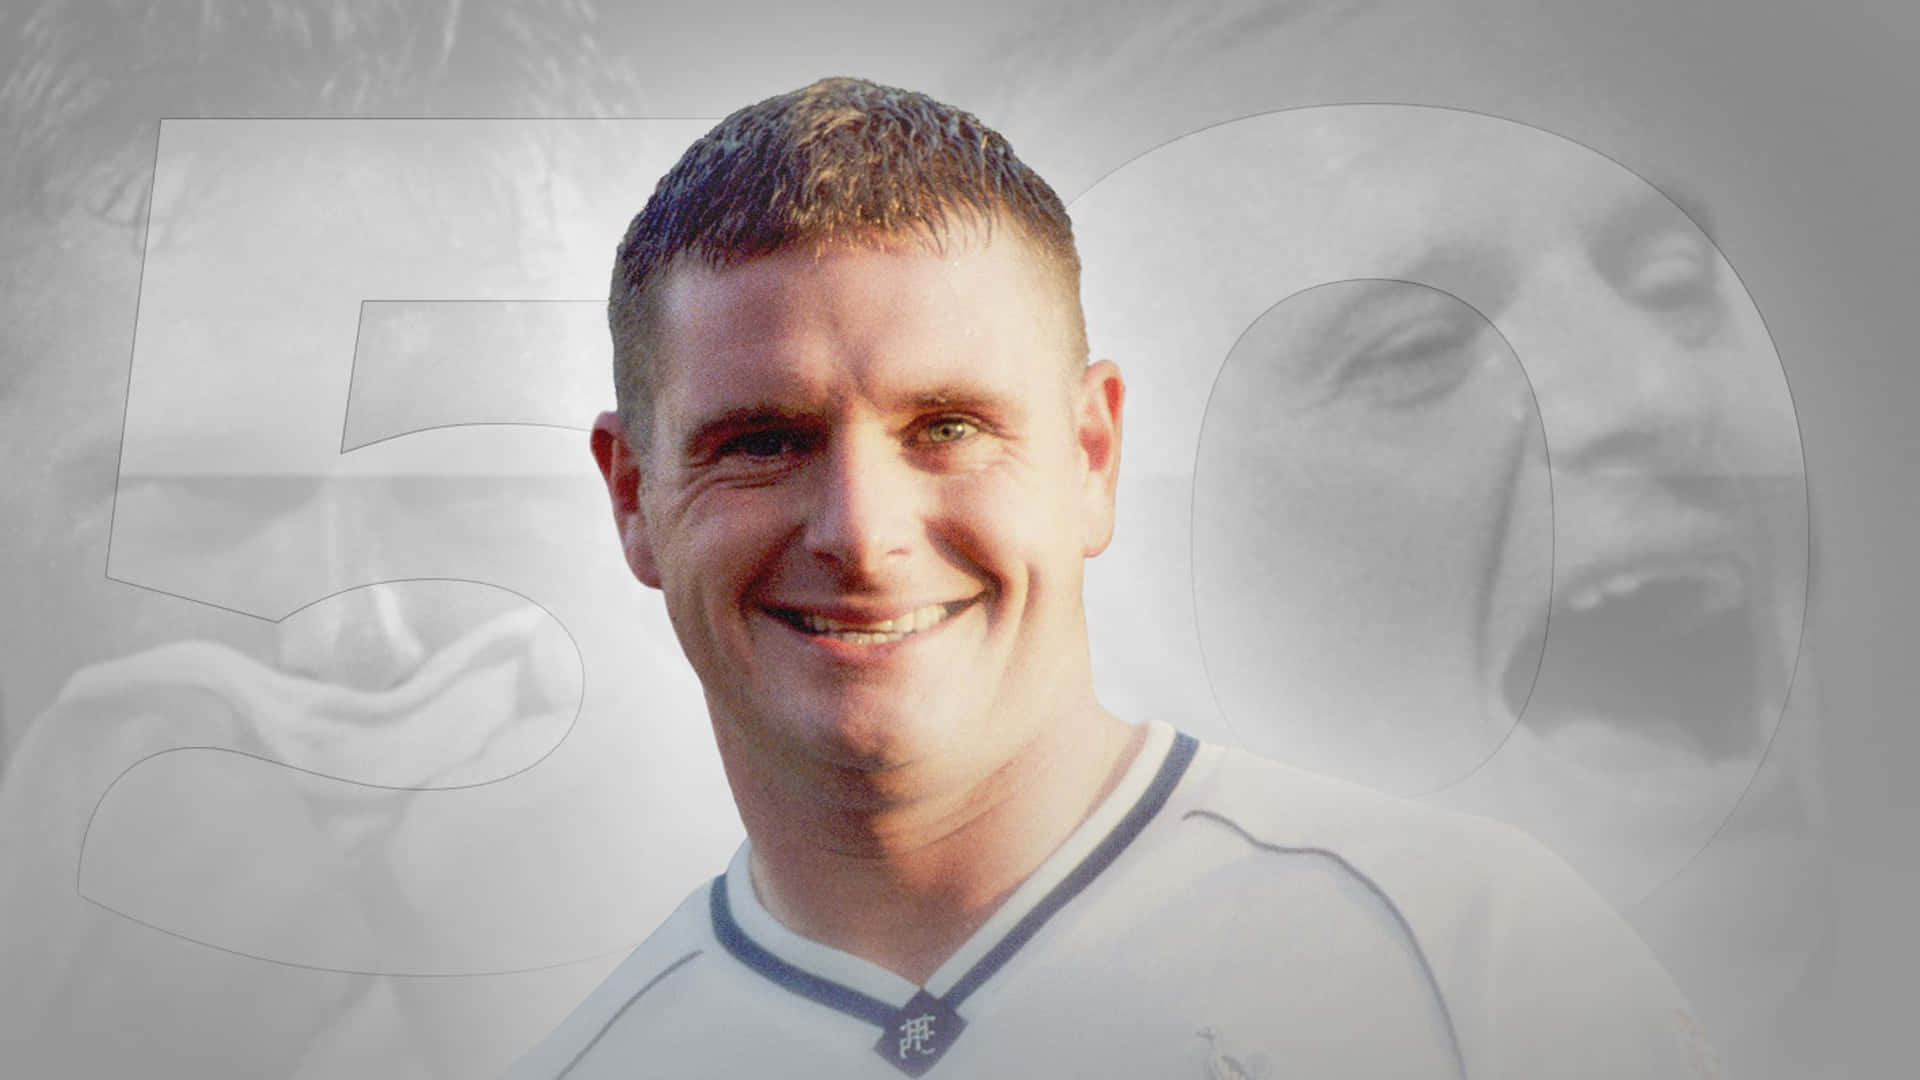 Paul Gascoigne, en engelsk fodboldspiller, står som tapet. Wallpaper